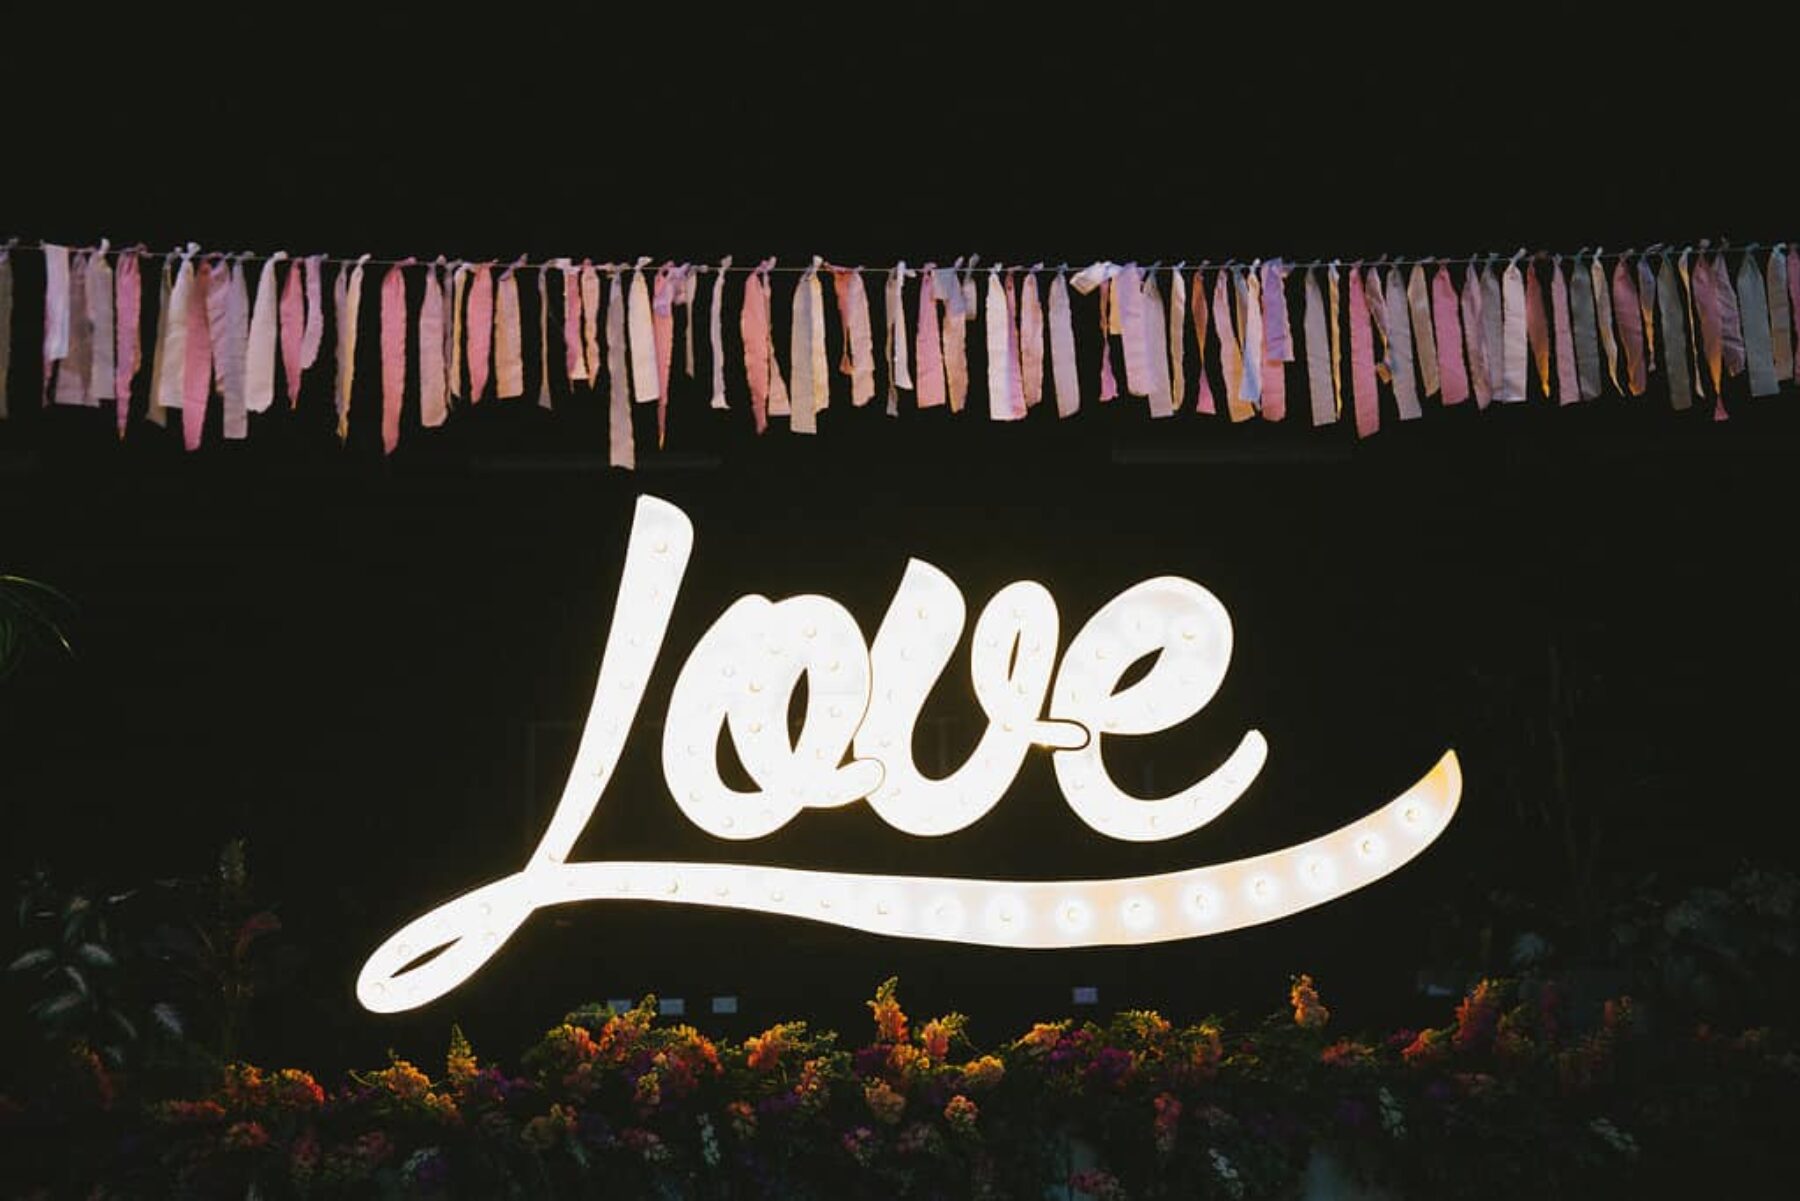 illuminated LOVE sign